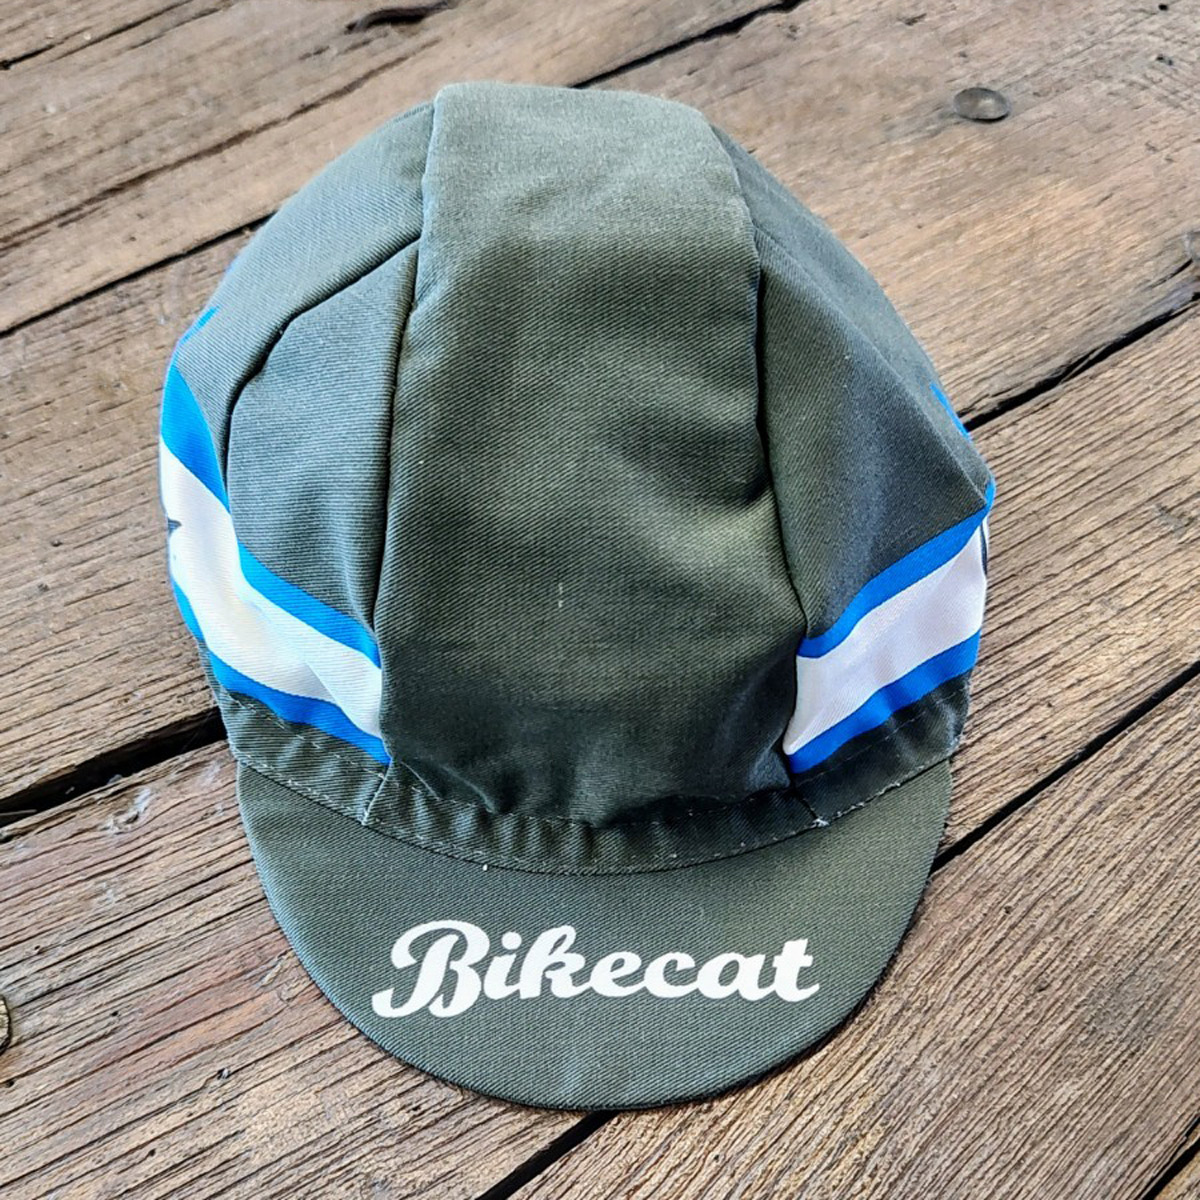 Bikecat Girona Vintage cap - olive/blue - front